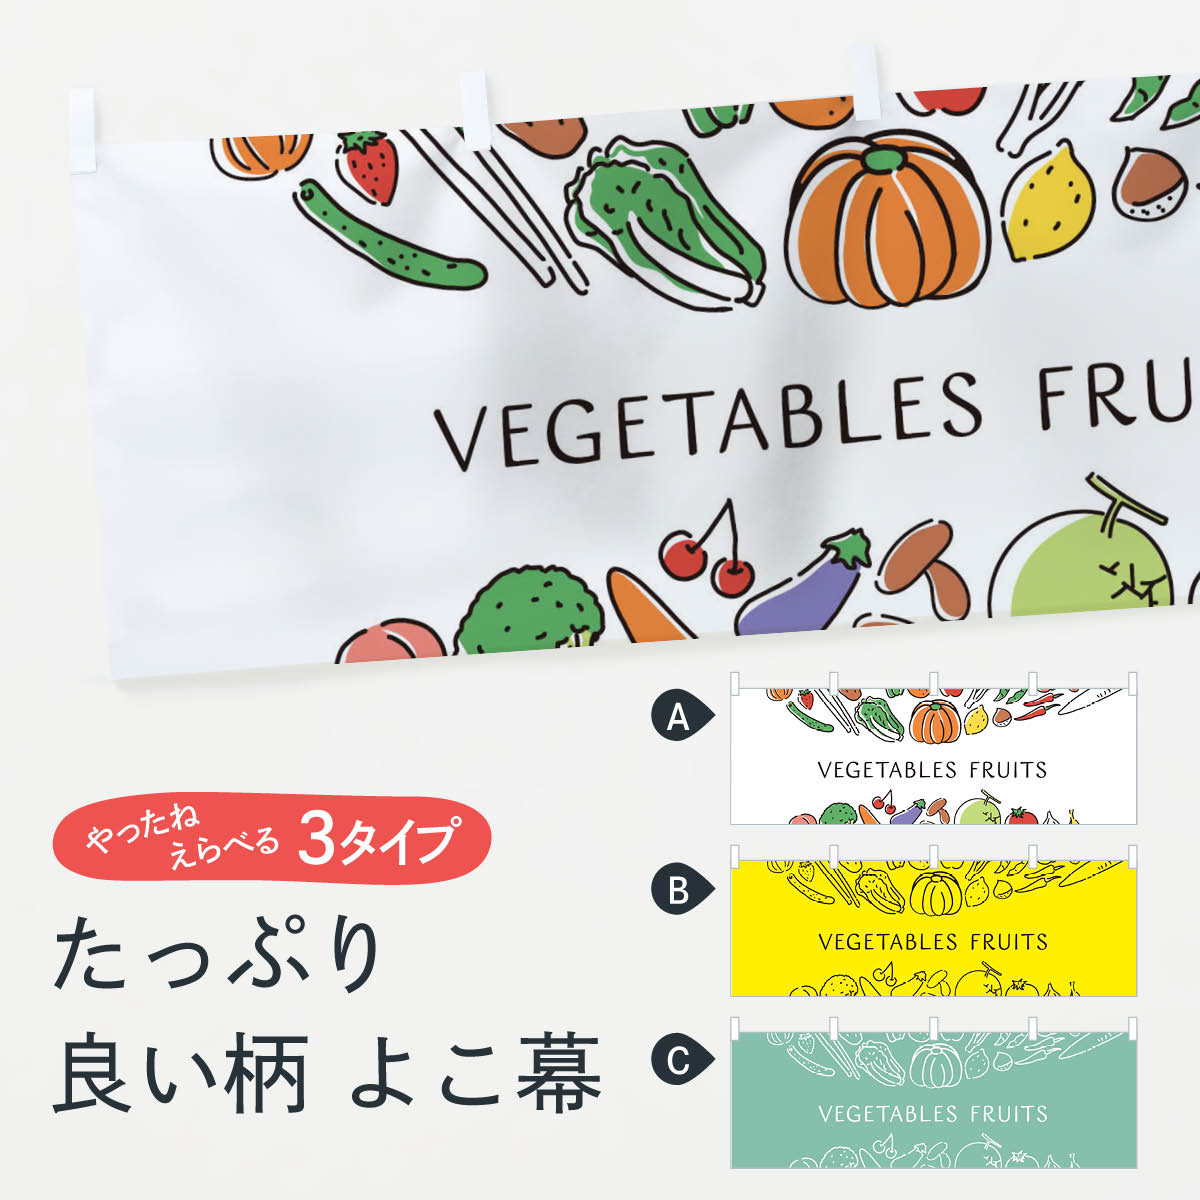 【ネコポス送料360】 横幕 VEGETABLES FRUITS 7KCF 野菜 やさい 新鮮野菜・直売